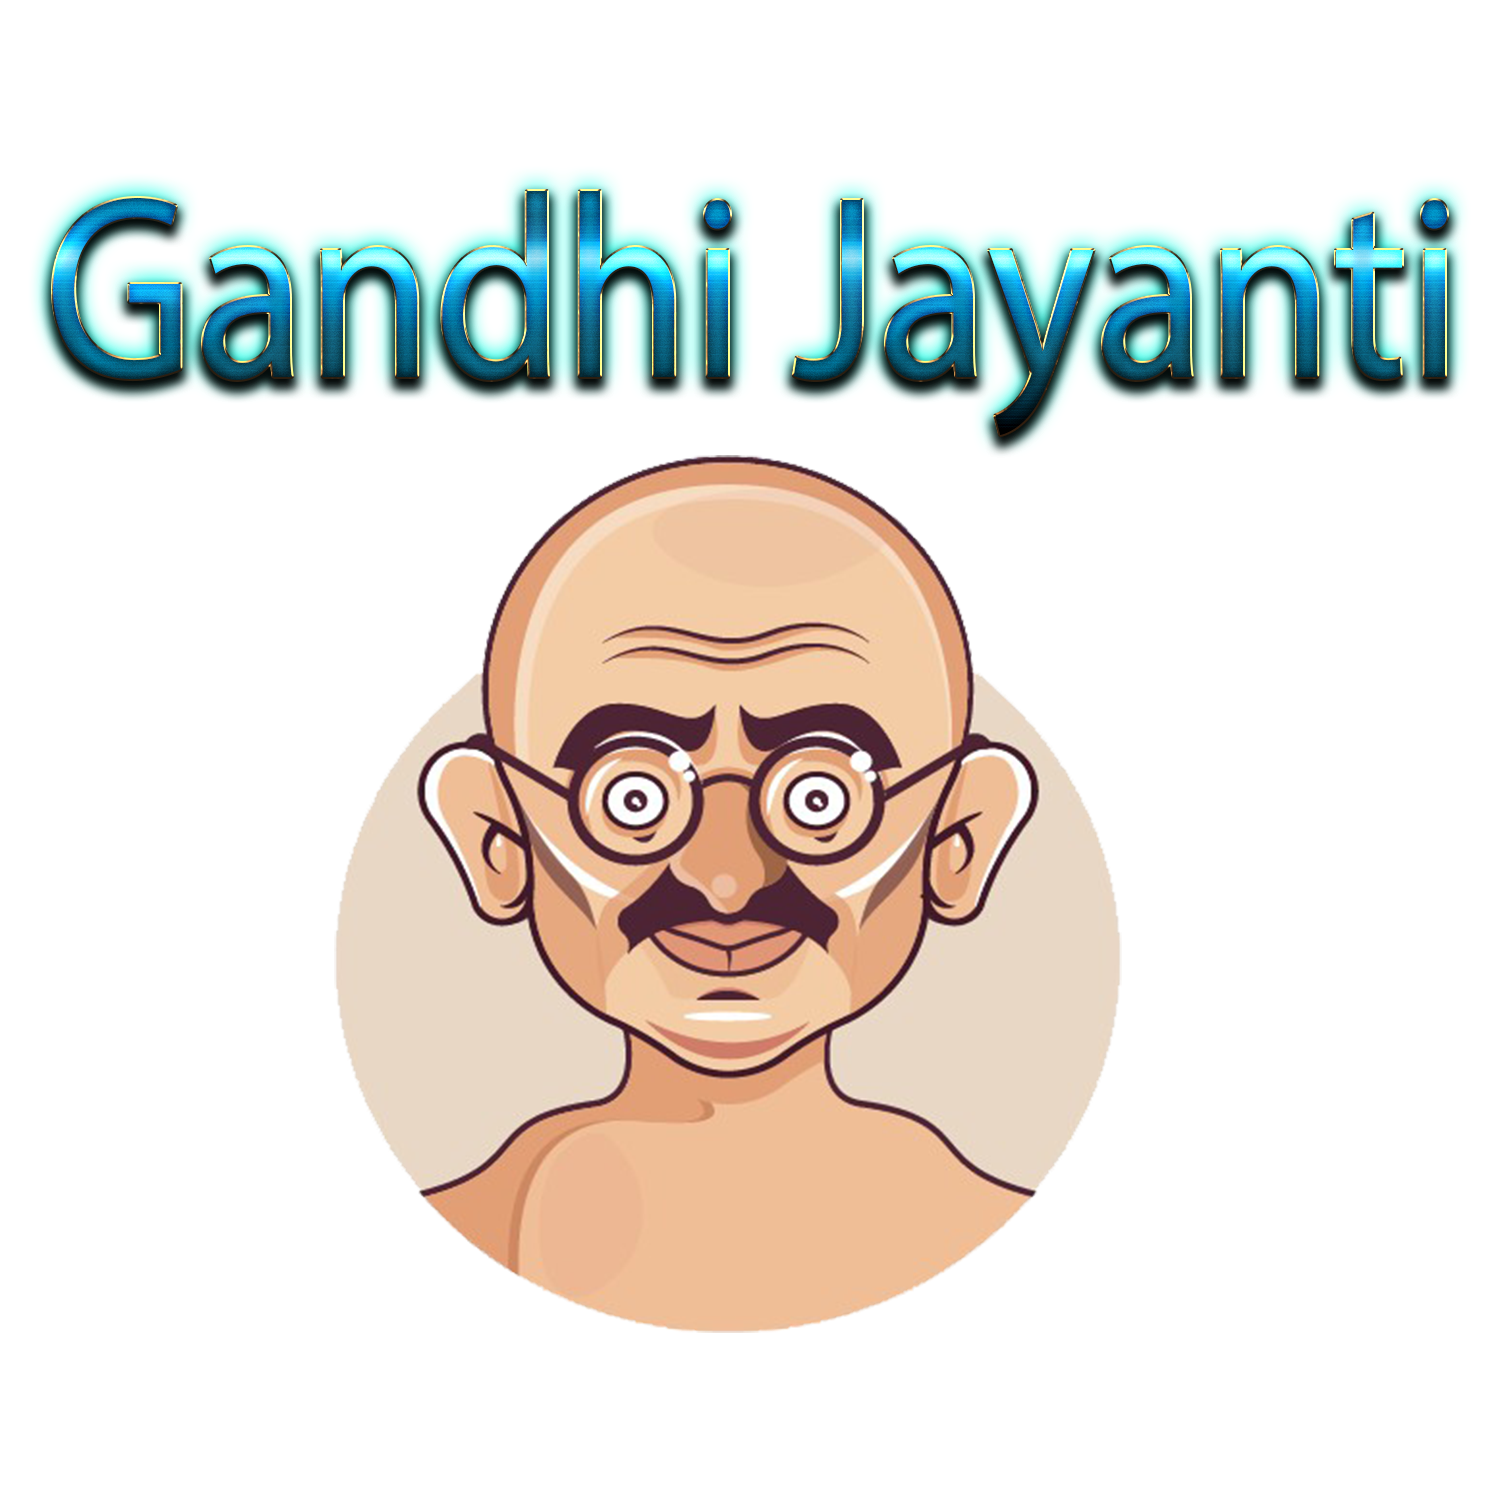 Gandhi Jayanti Transparent Picture